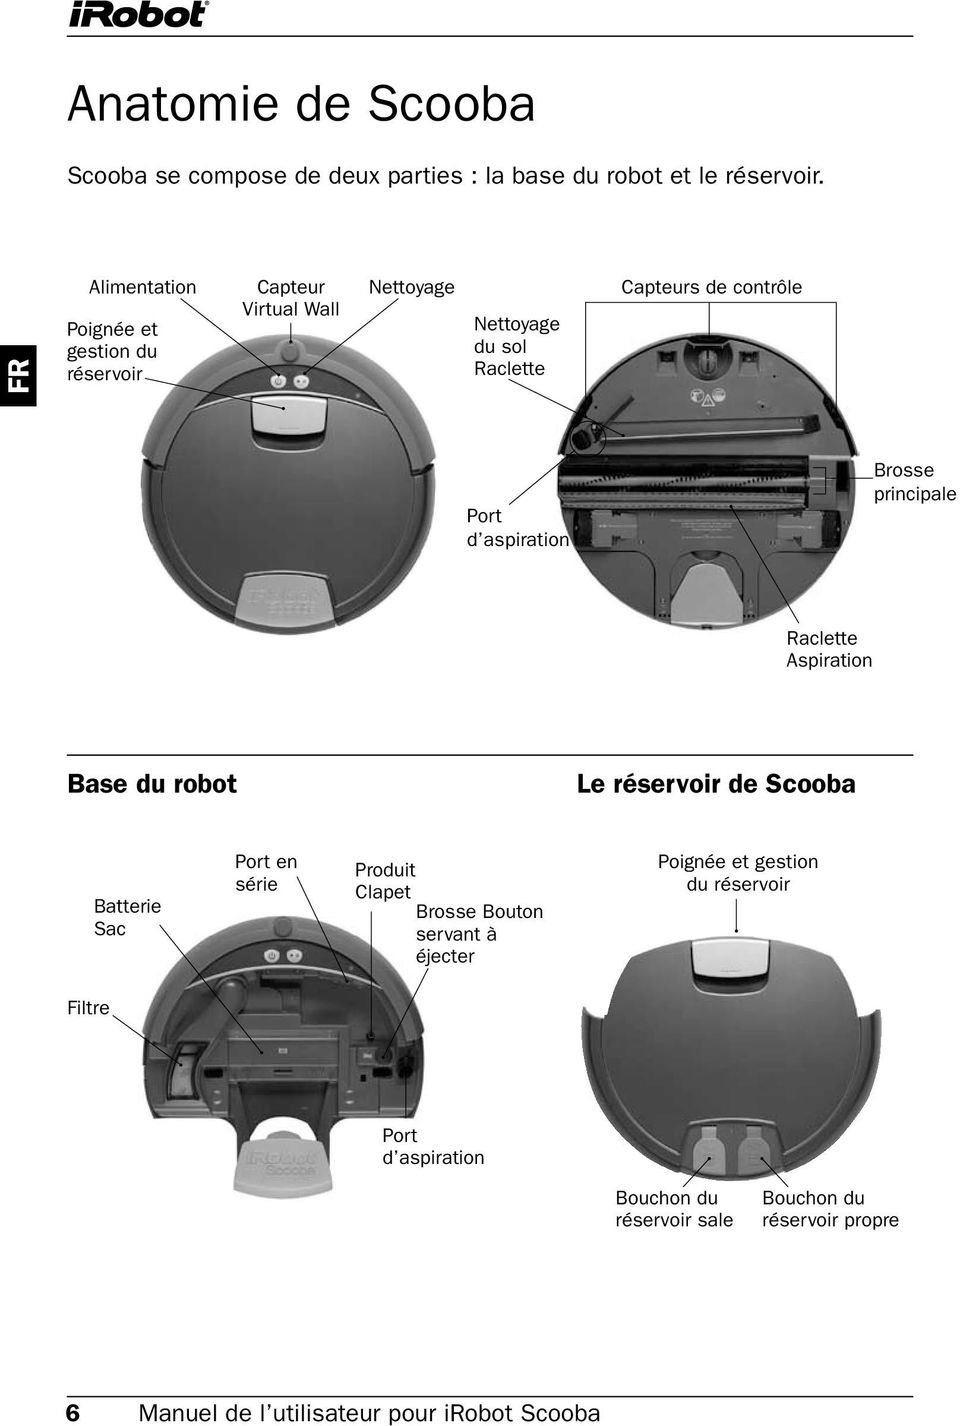 aspiration Brosse principale Raclette Aspiration Base du robot le réservoir de Scooba Batterie Sac Port en série Produit Clapet